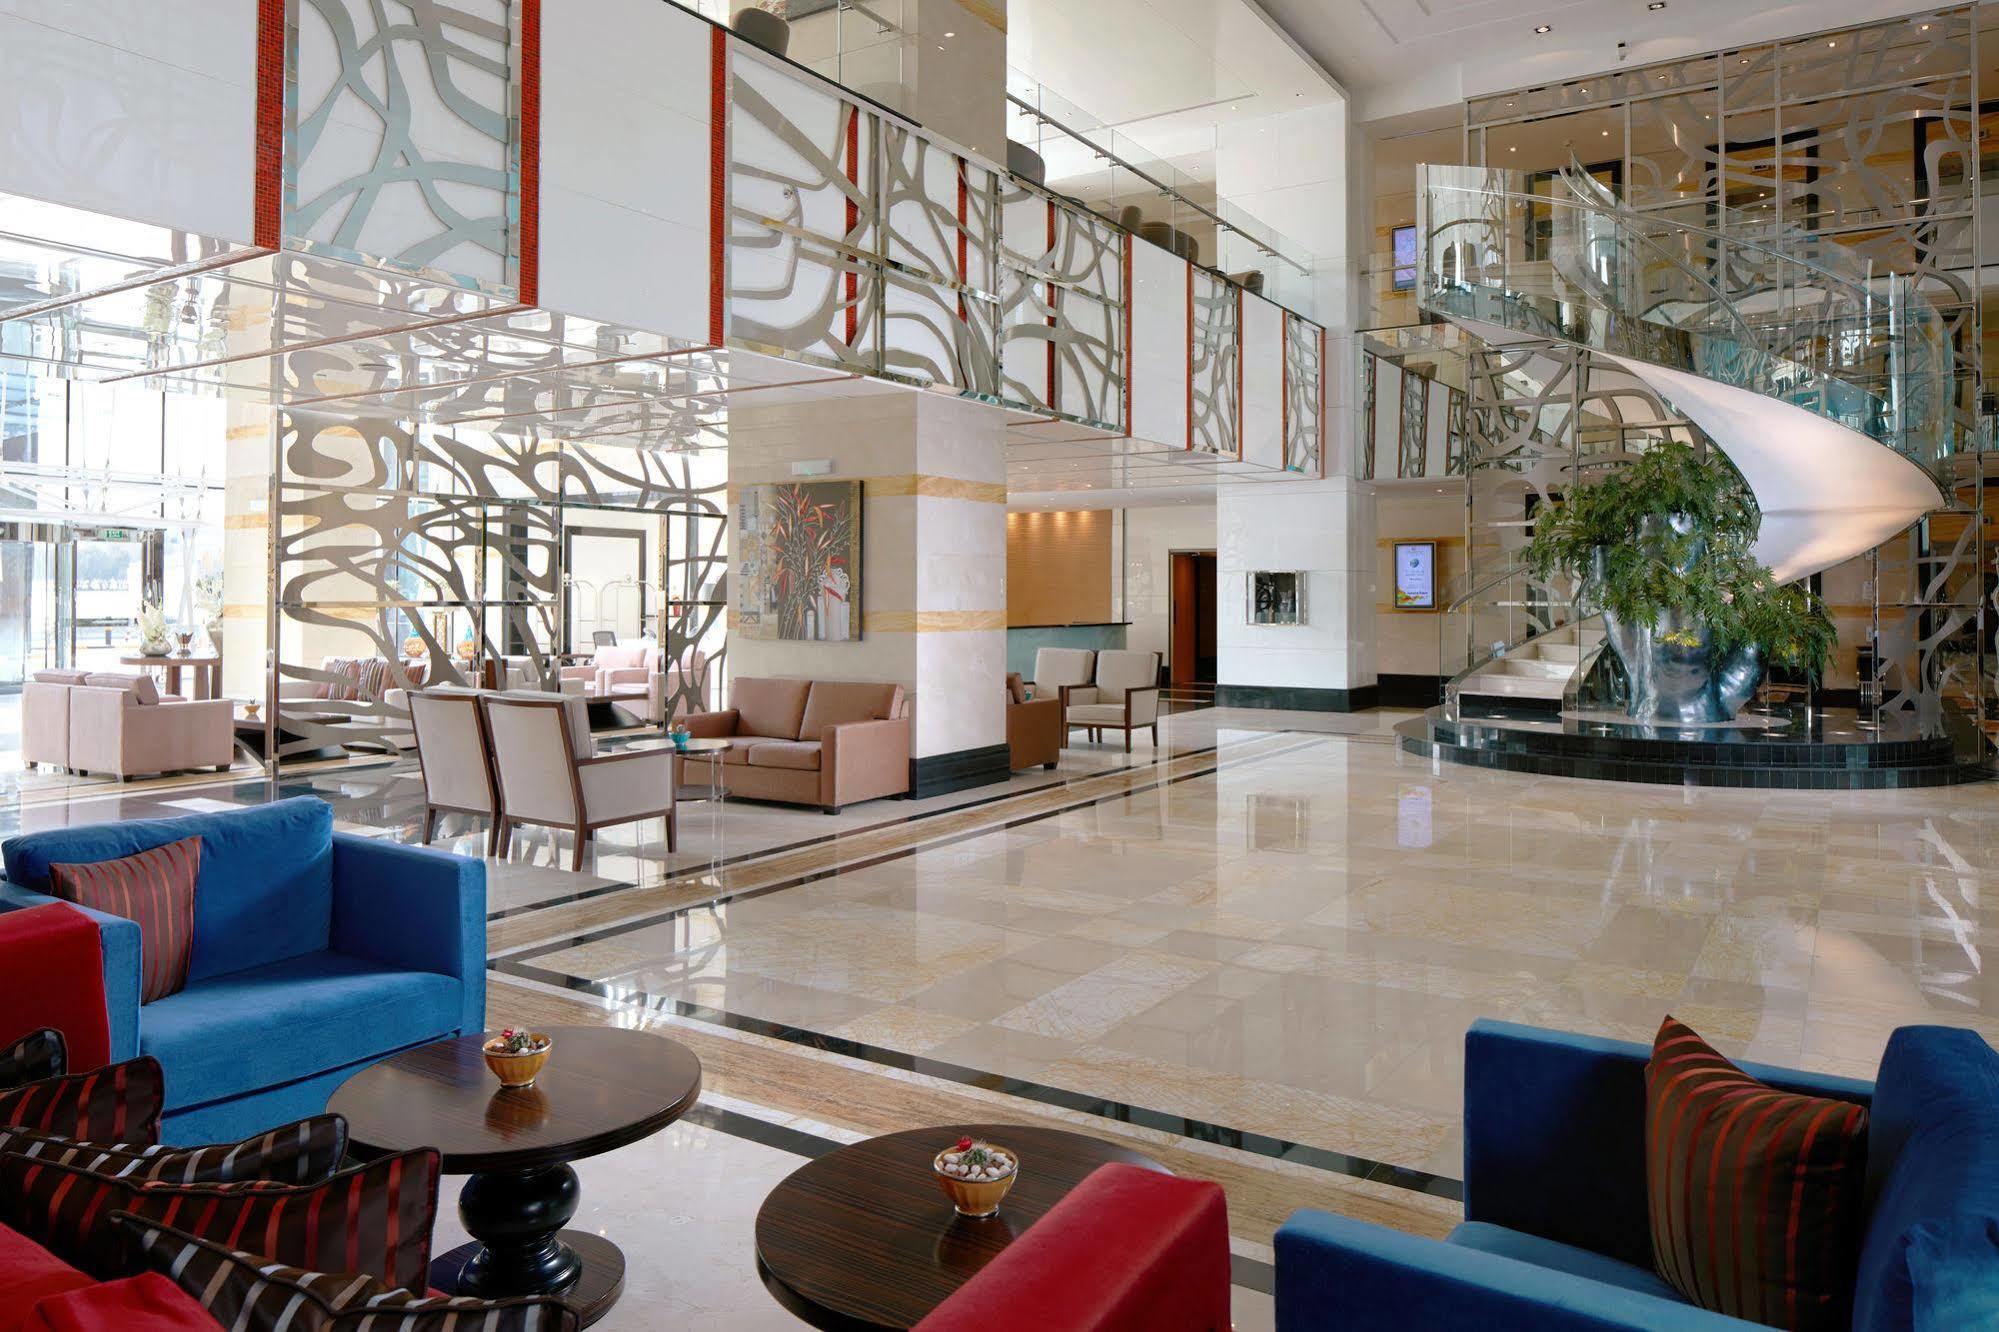 Millennium Hotel&Convention Centre Kuwait Koeweit Buitenkant foto